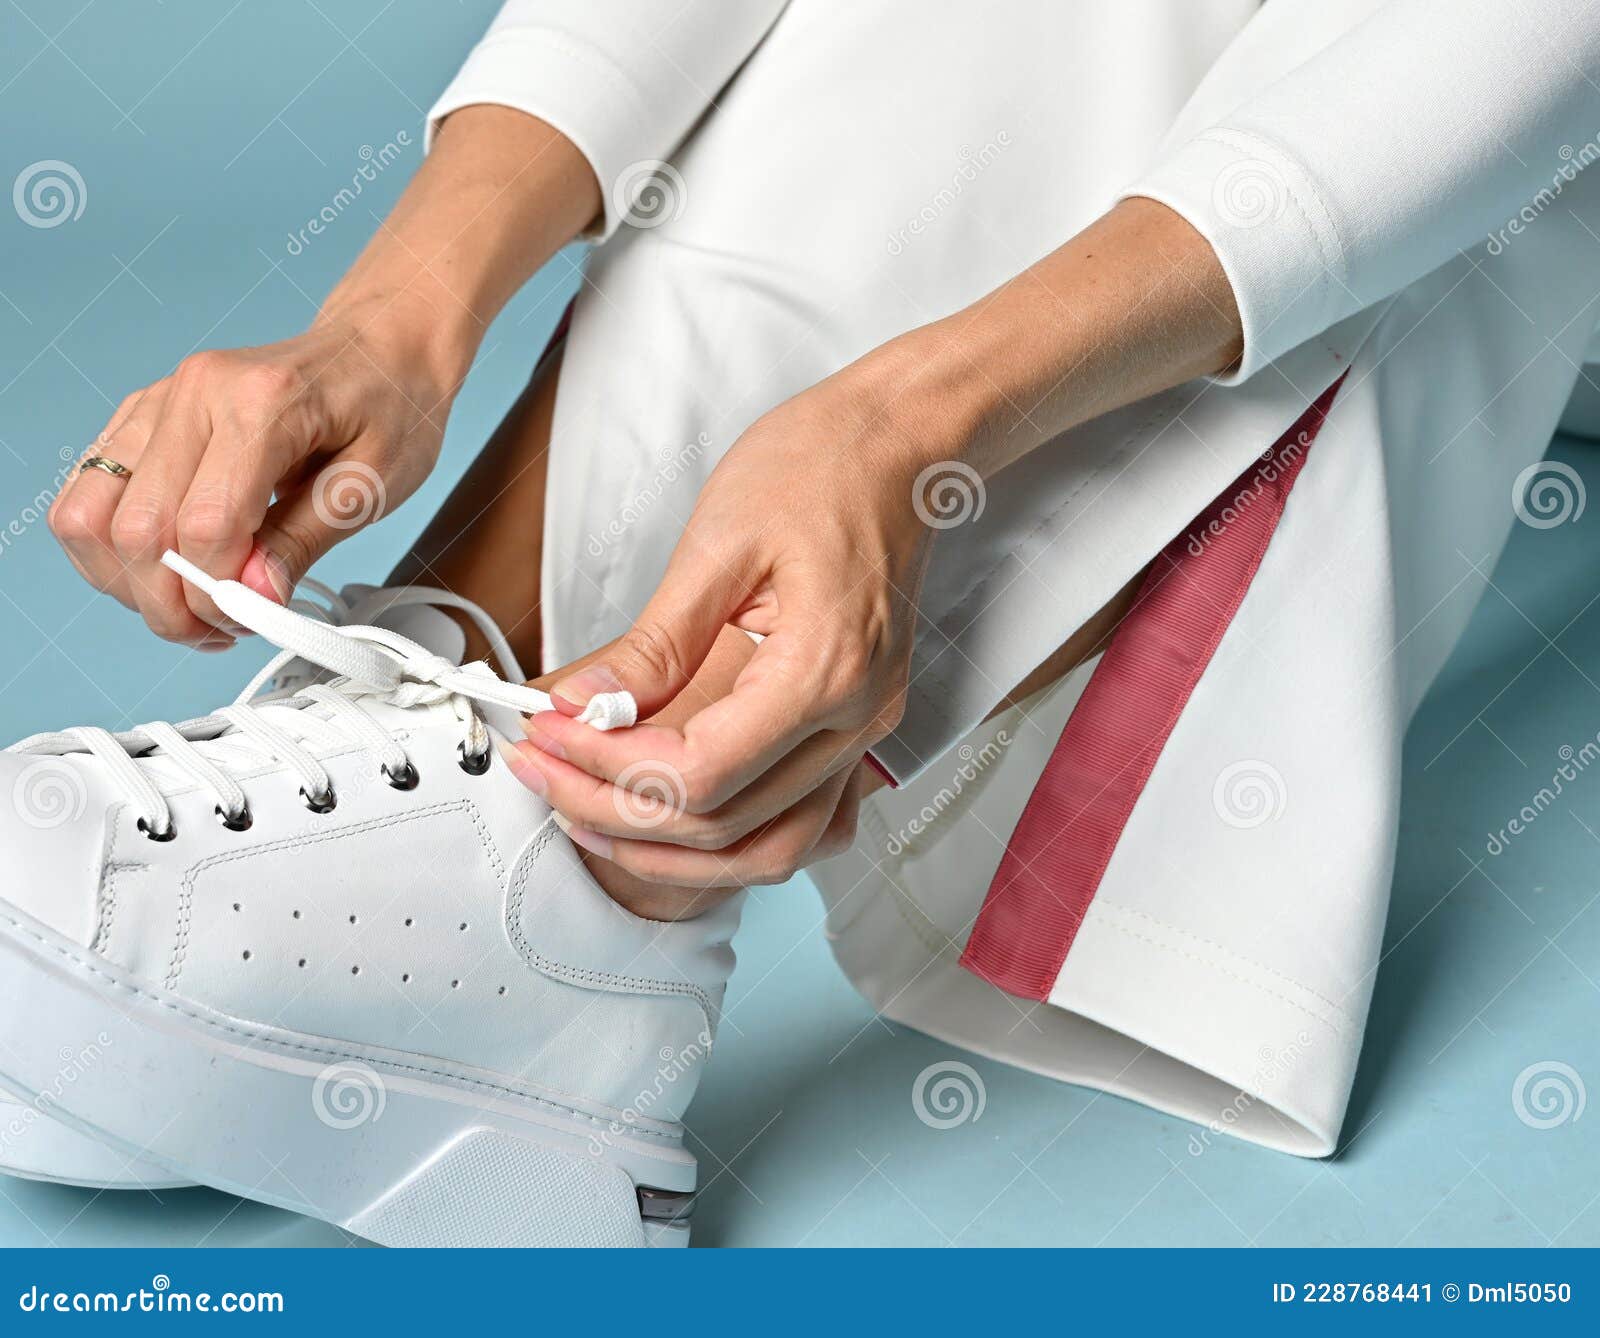 Cierre De Manos Mujer Corbatas Cordones De Zapatos De Sus Zapatillas Blancas De de archivo - Imagen de chaqueta, atractivo: